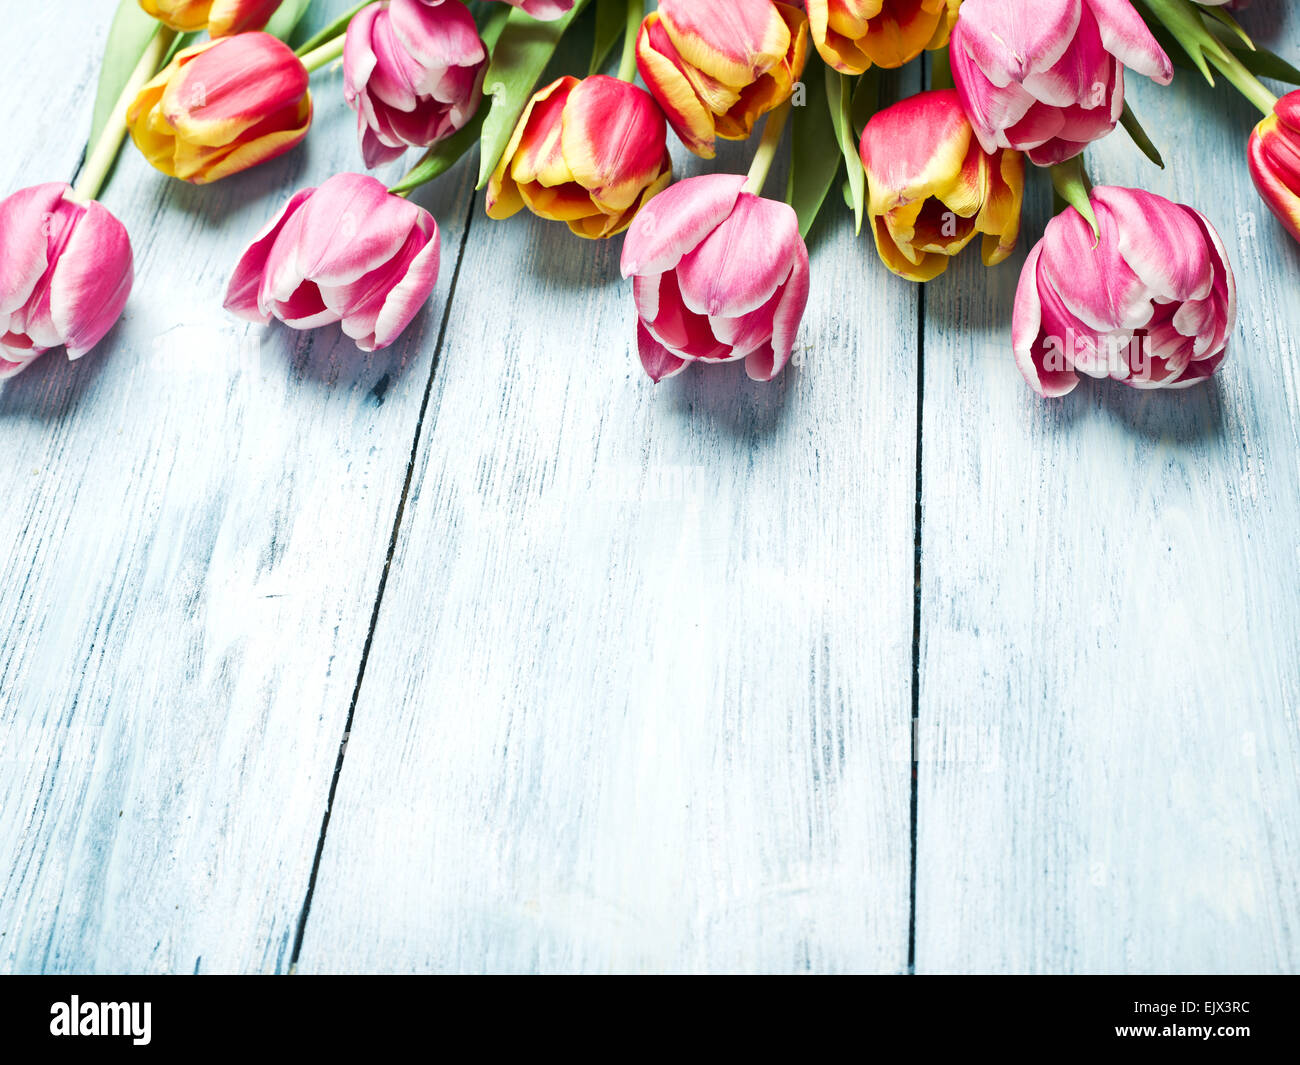 Rosa und rote Tulpen auf einem blauen Hintergrund aus Holz. Platz für Text. Stockfoto